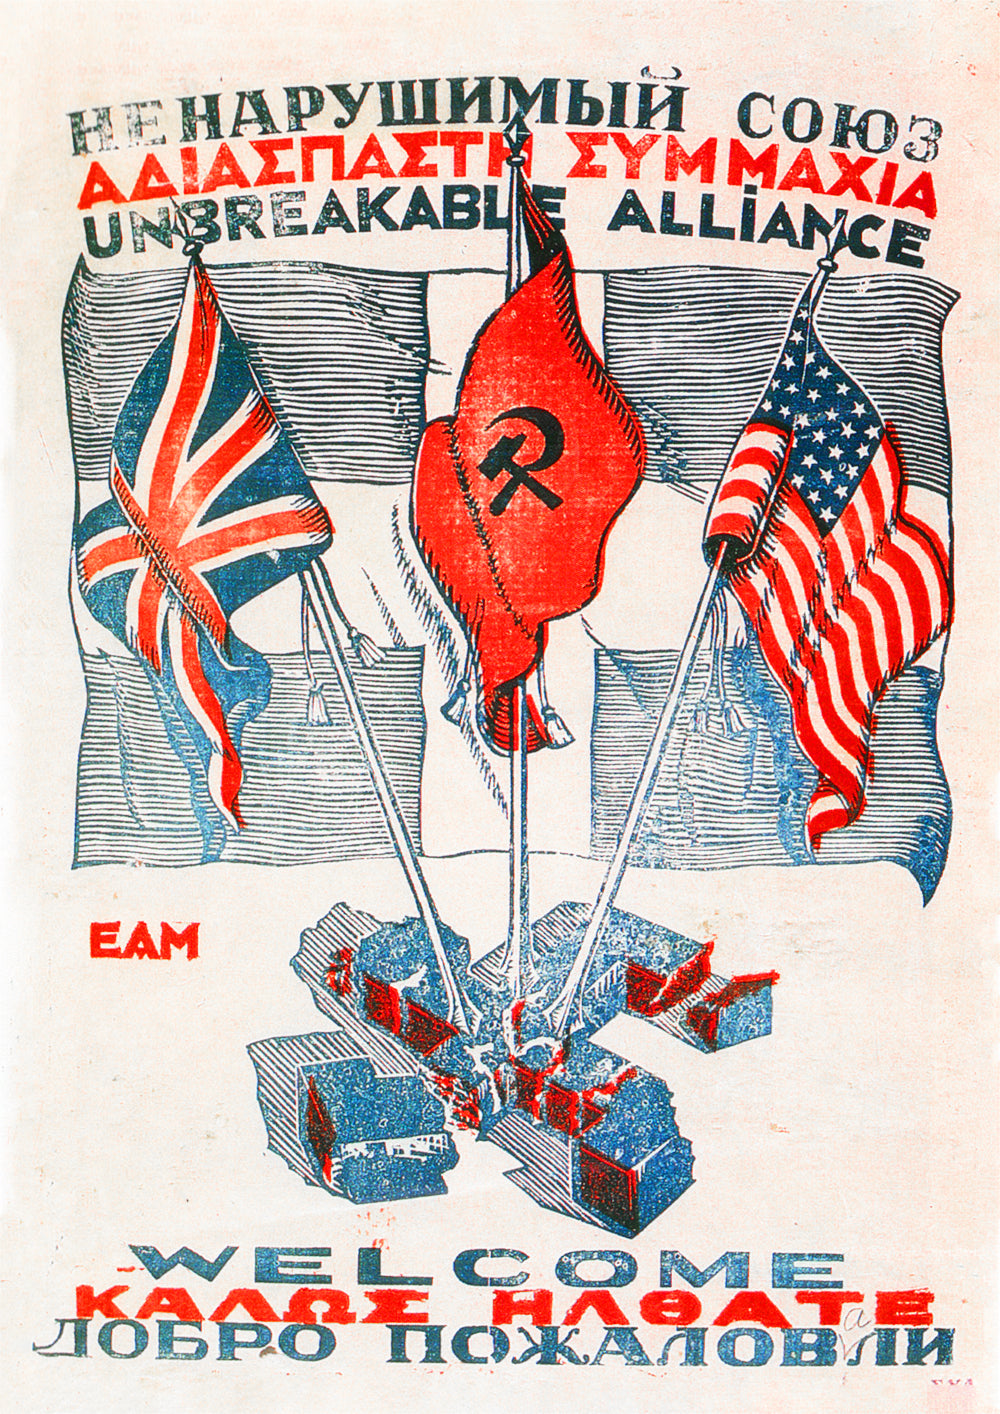 Unbreakable alliance – Greek World War Two poster